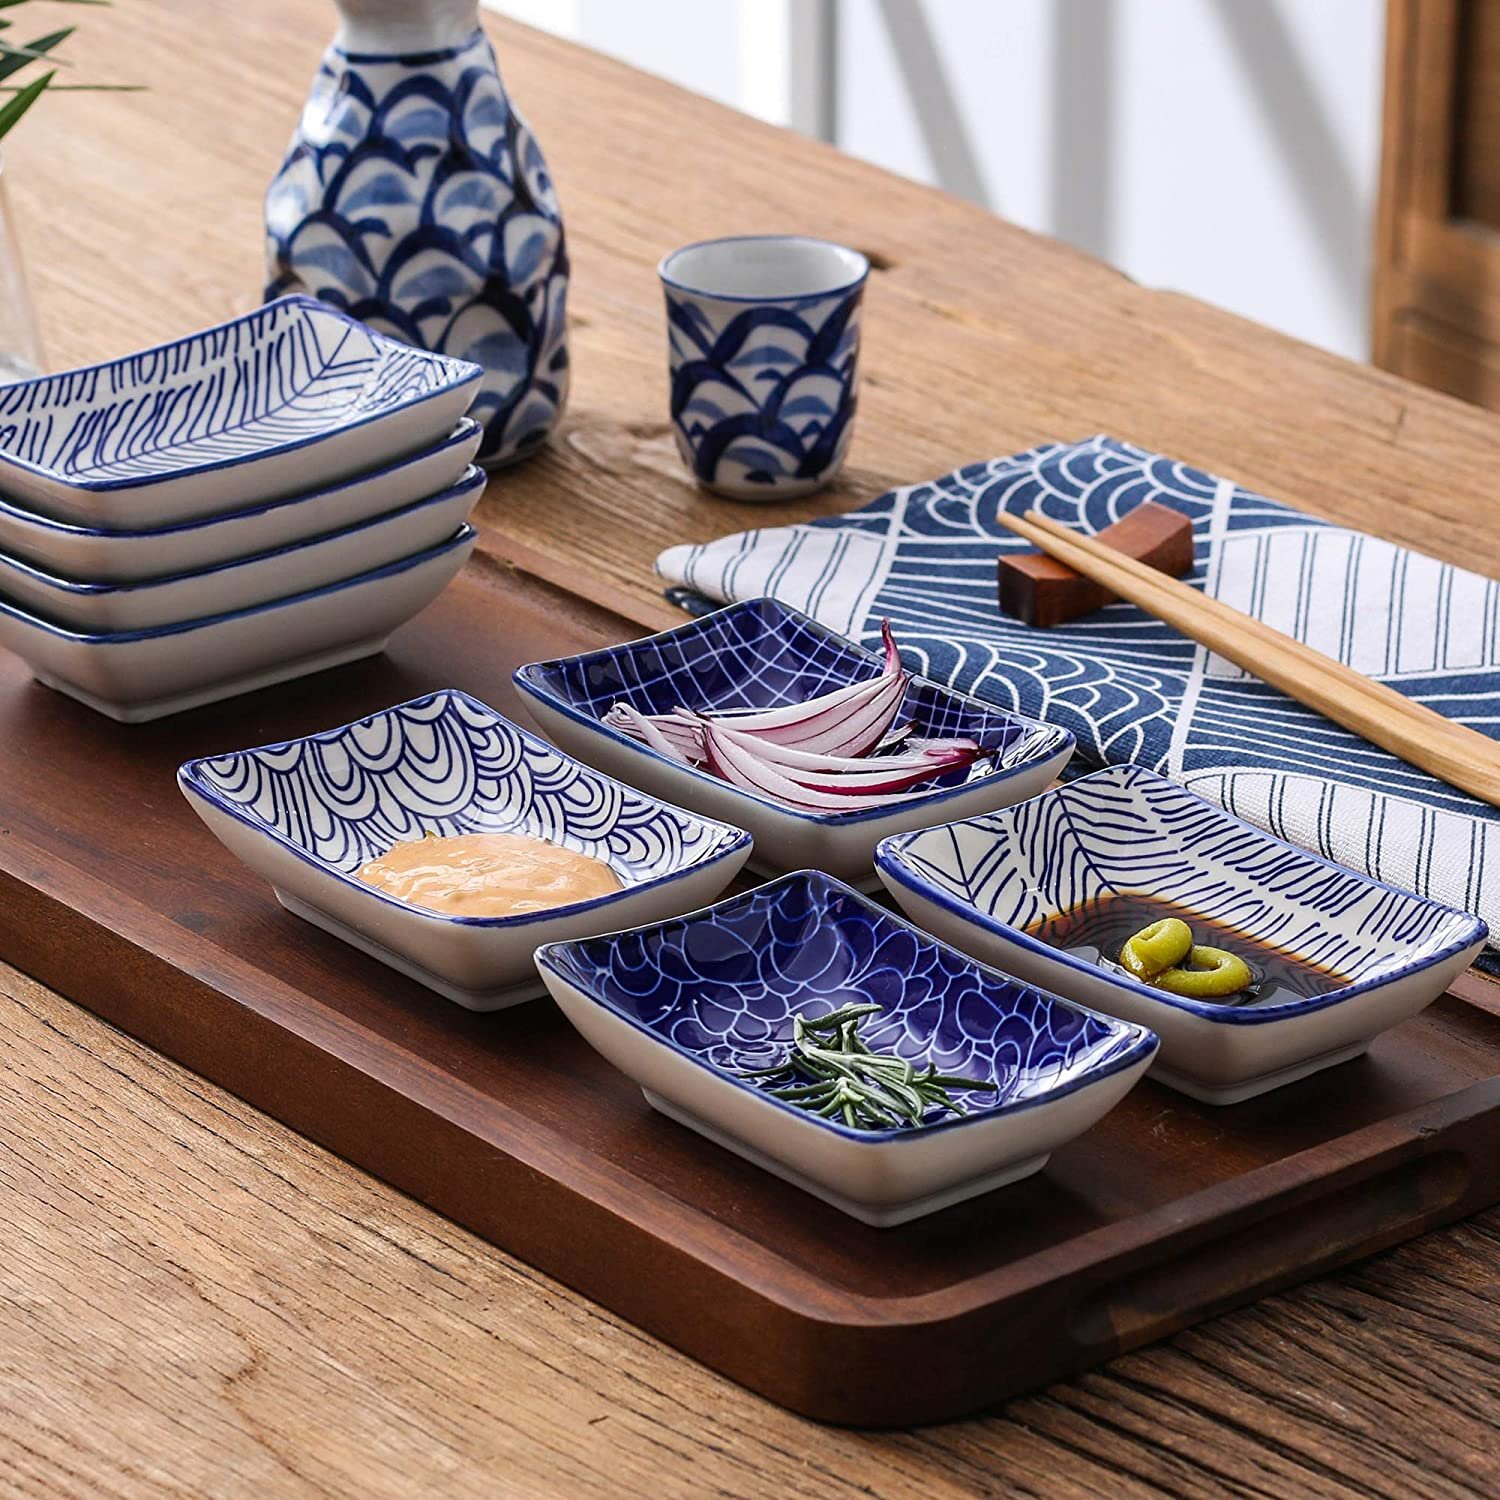 vancasso Takaki Porcelain Sushi Plate Set for 2, Japanese Style